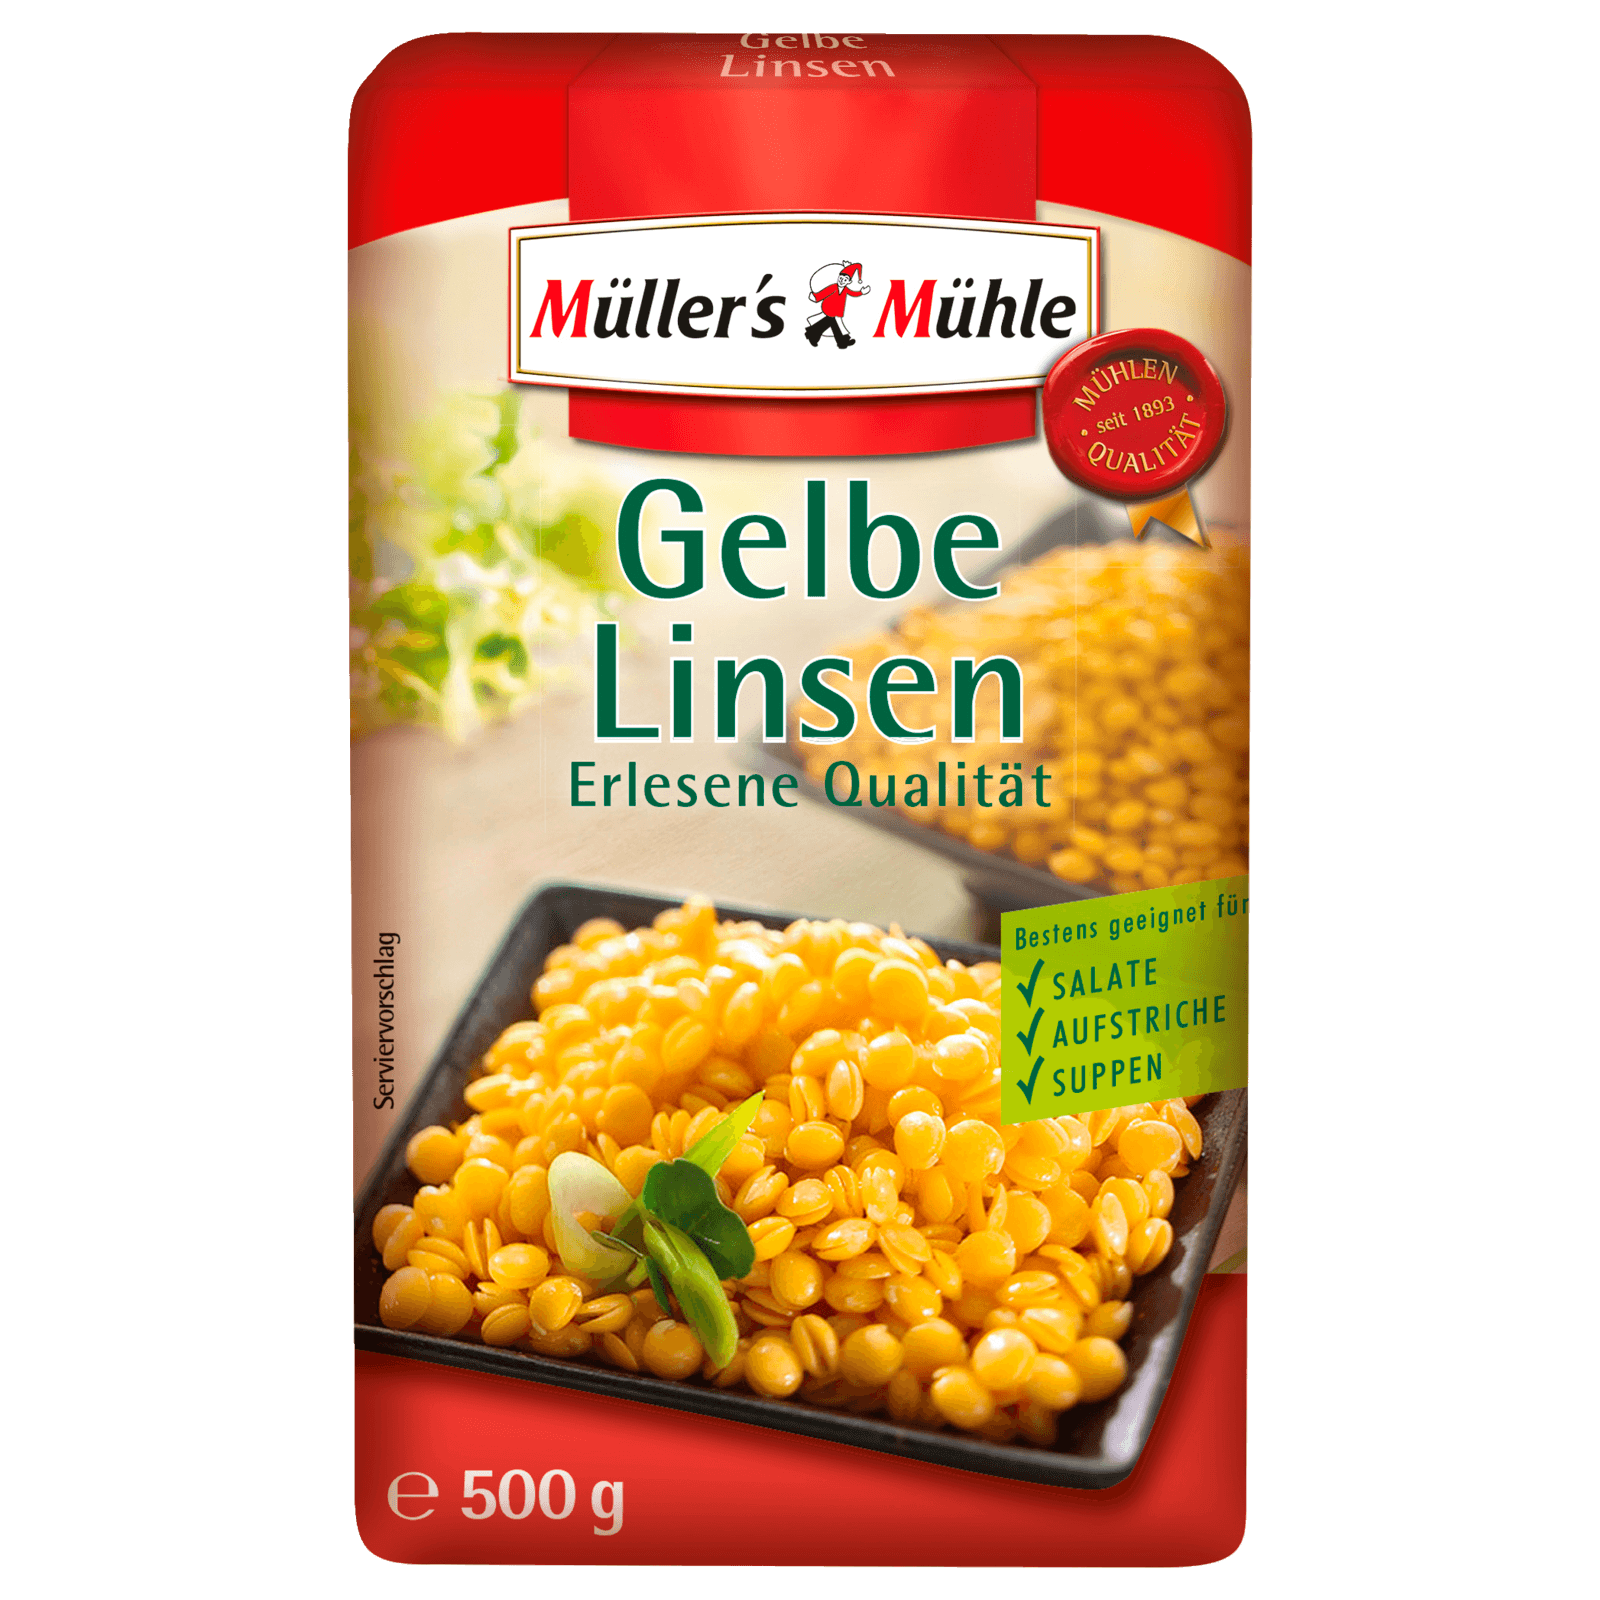 Müller's Mühle Gelbe Linsen 500g bei REWE online bestellen!